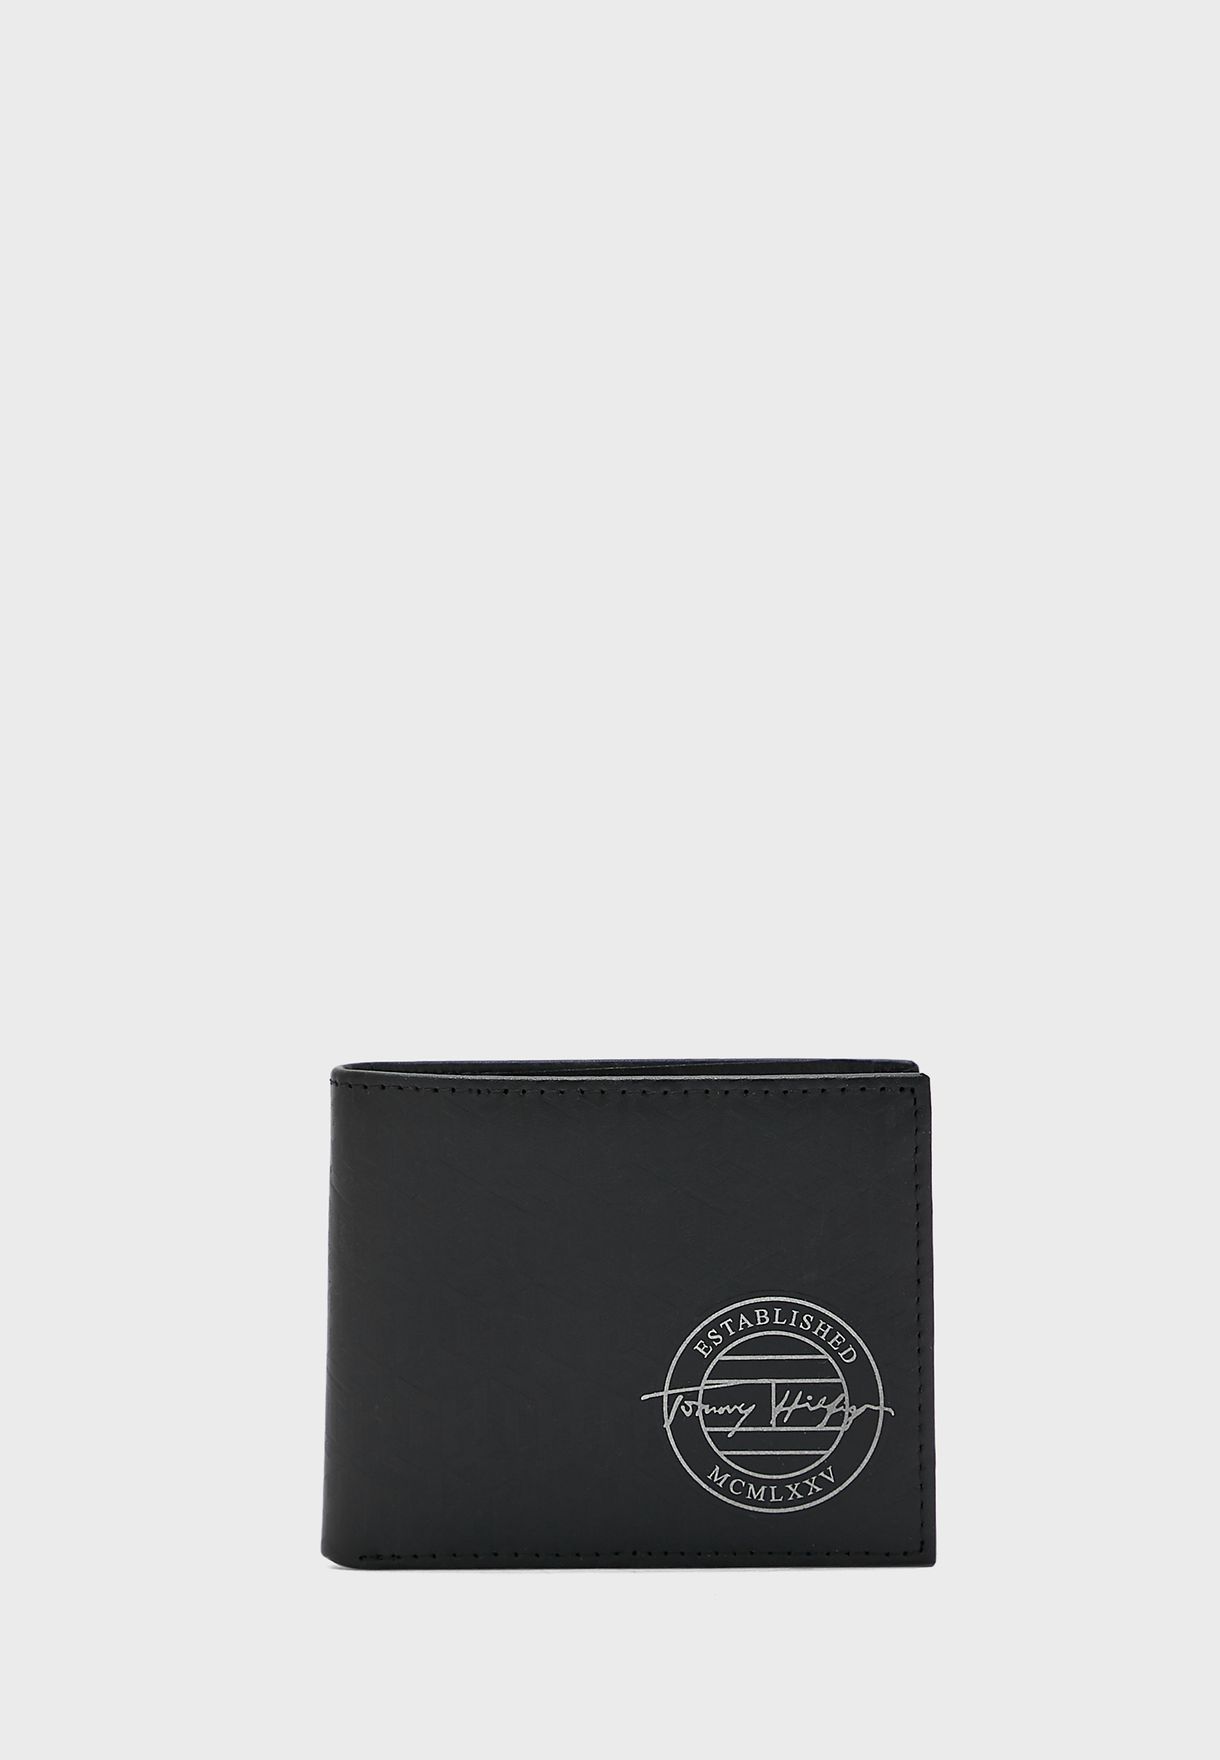 محفظة صغيرة بشعار الماركة